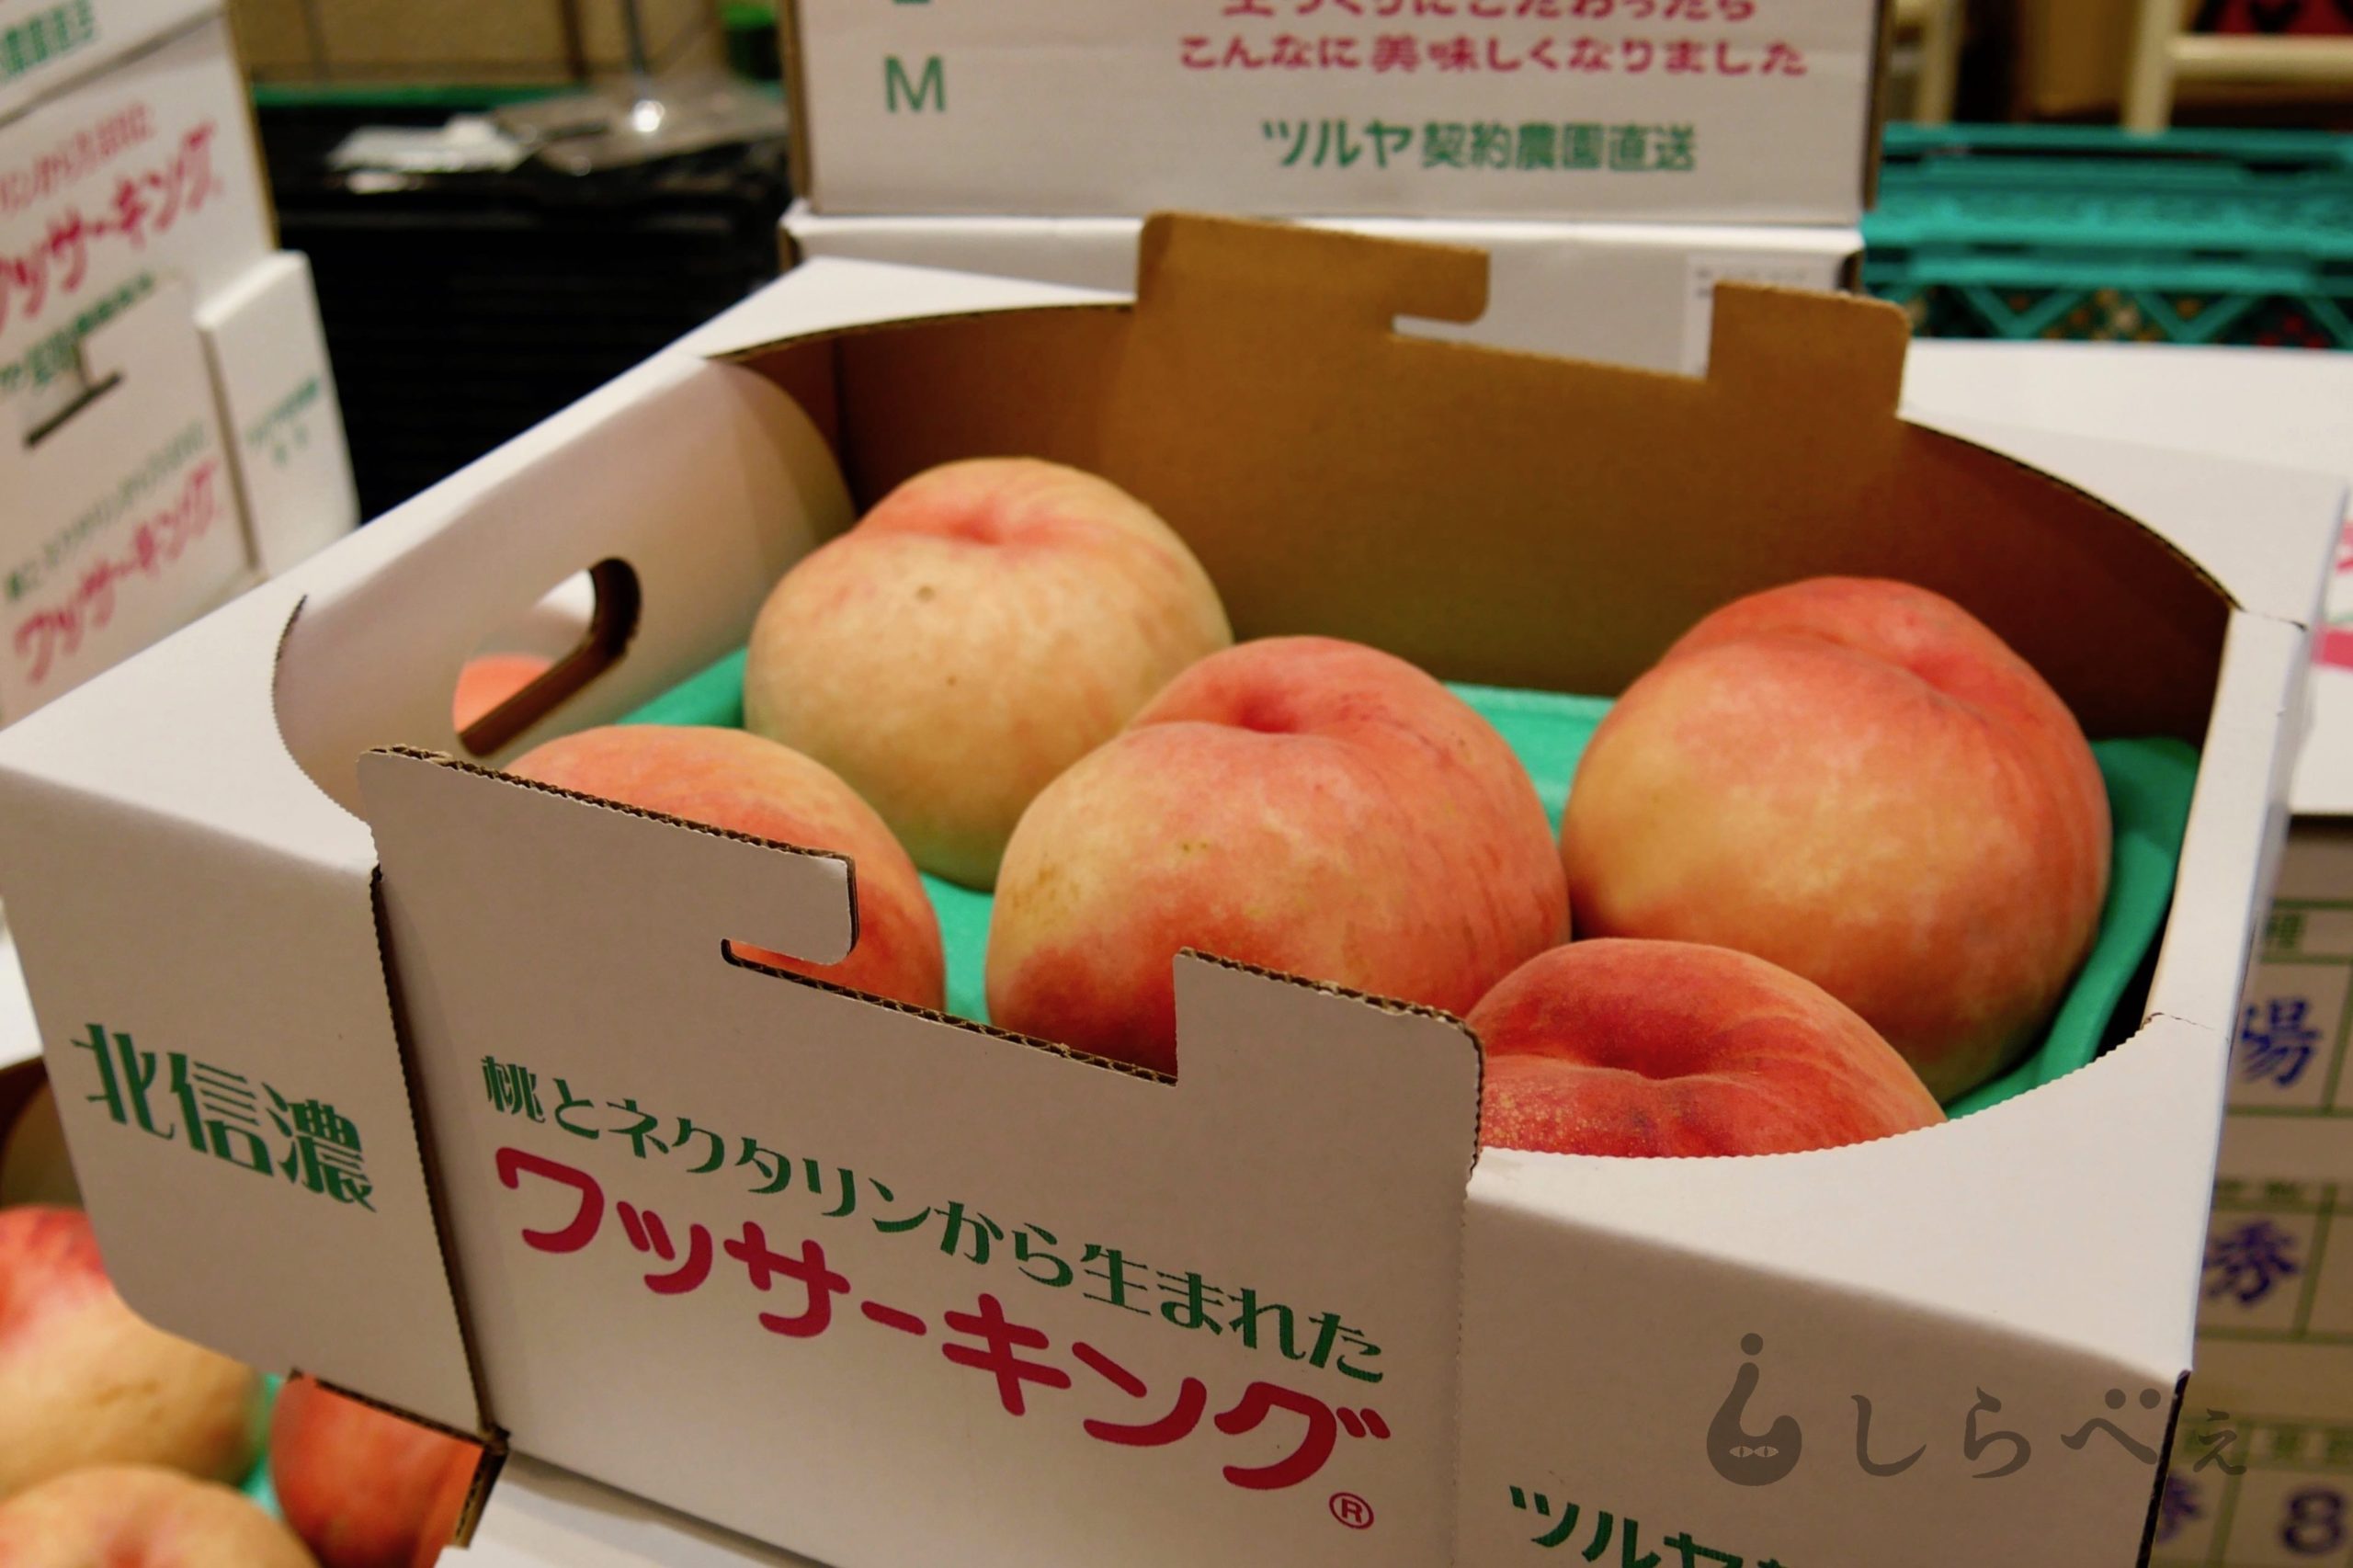 長野県の新名物！ 桃とネクタリンから生まれたフルーツ「ワッサー」が激ウマ – Sirabee